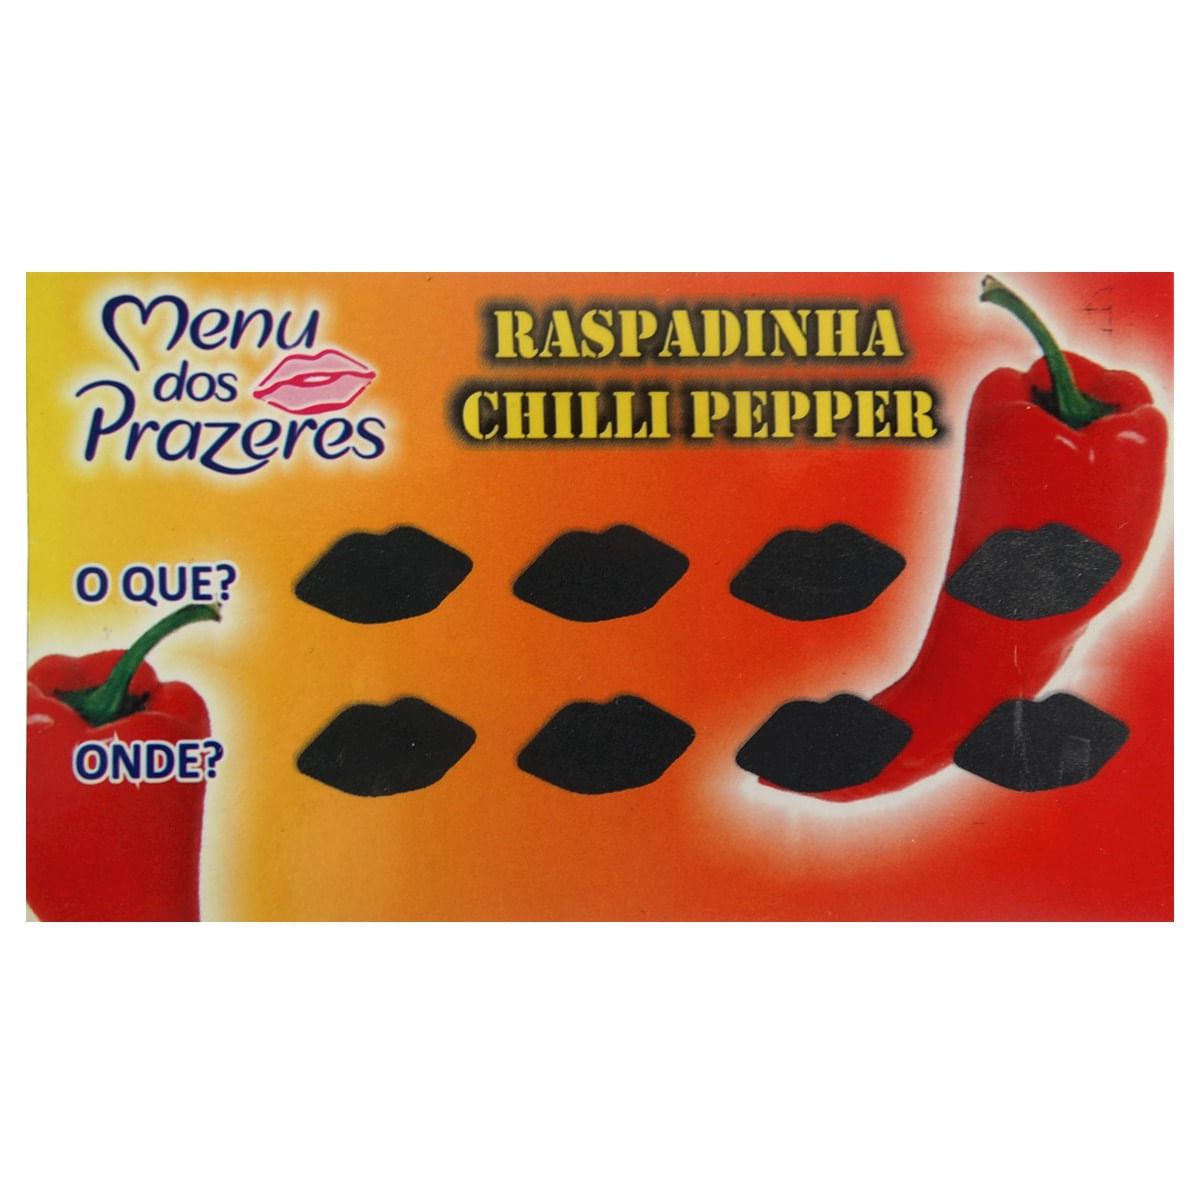 Raspadinha Chilli Pepper Menu dos Prazeres